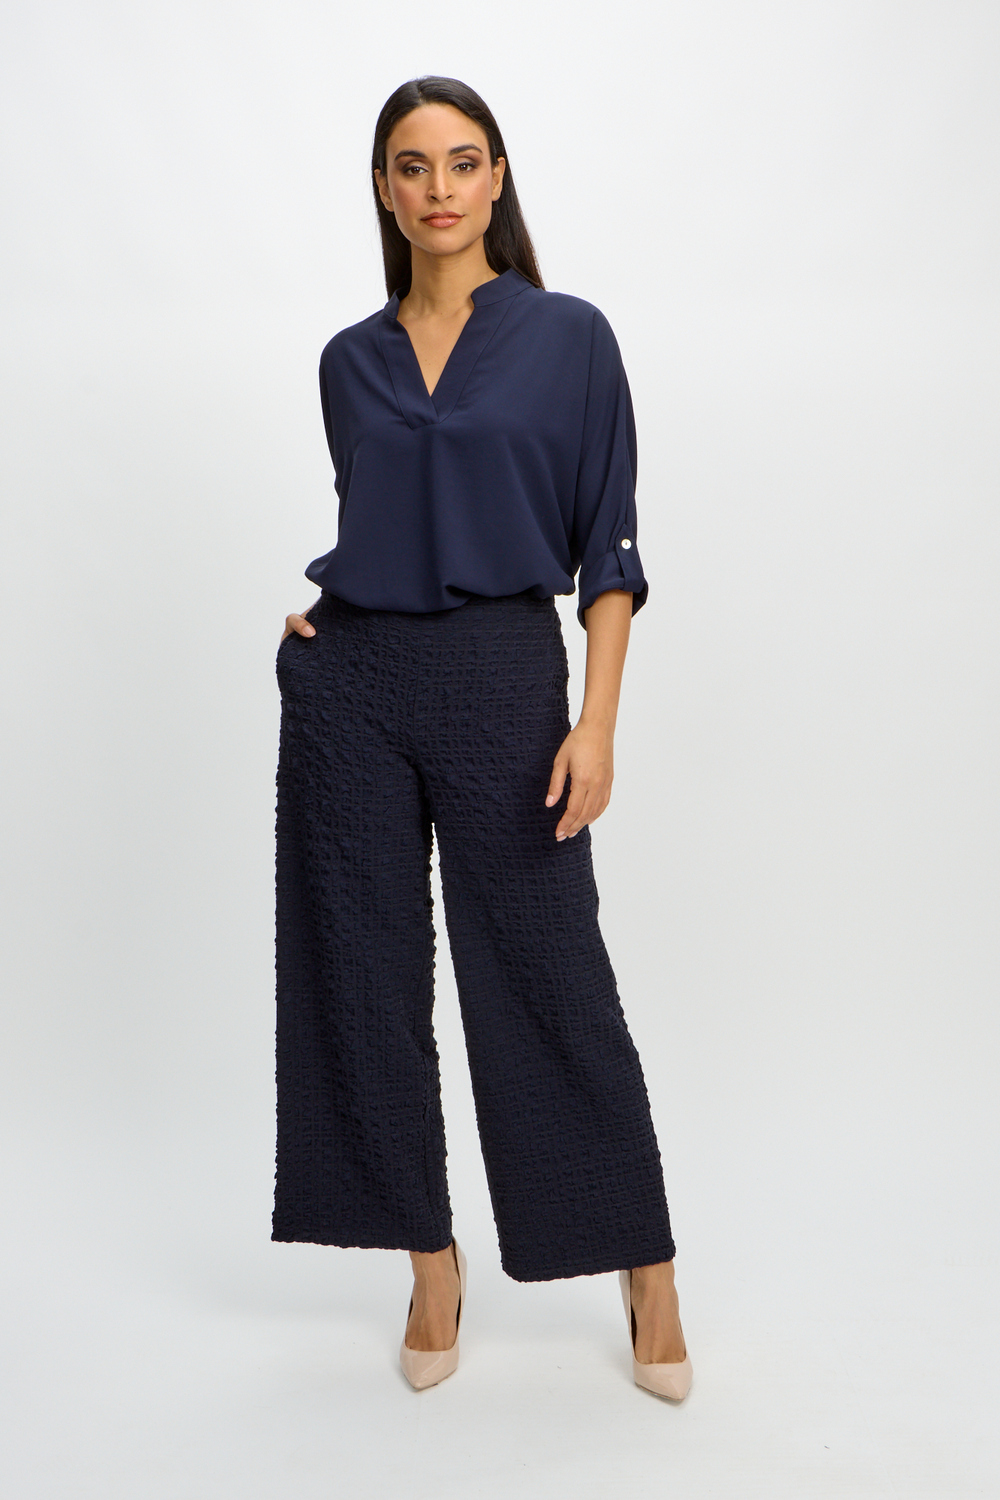 Pantalon large, carreaux texturés modèle 241187. Bleu Nuit